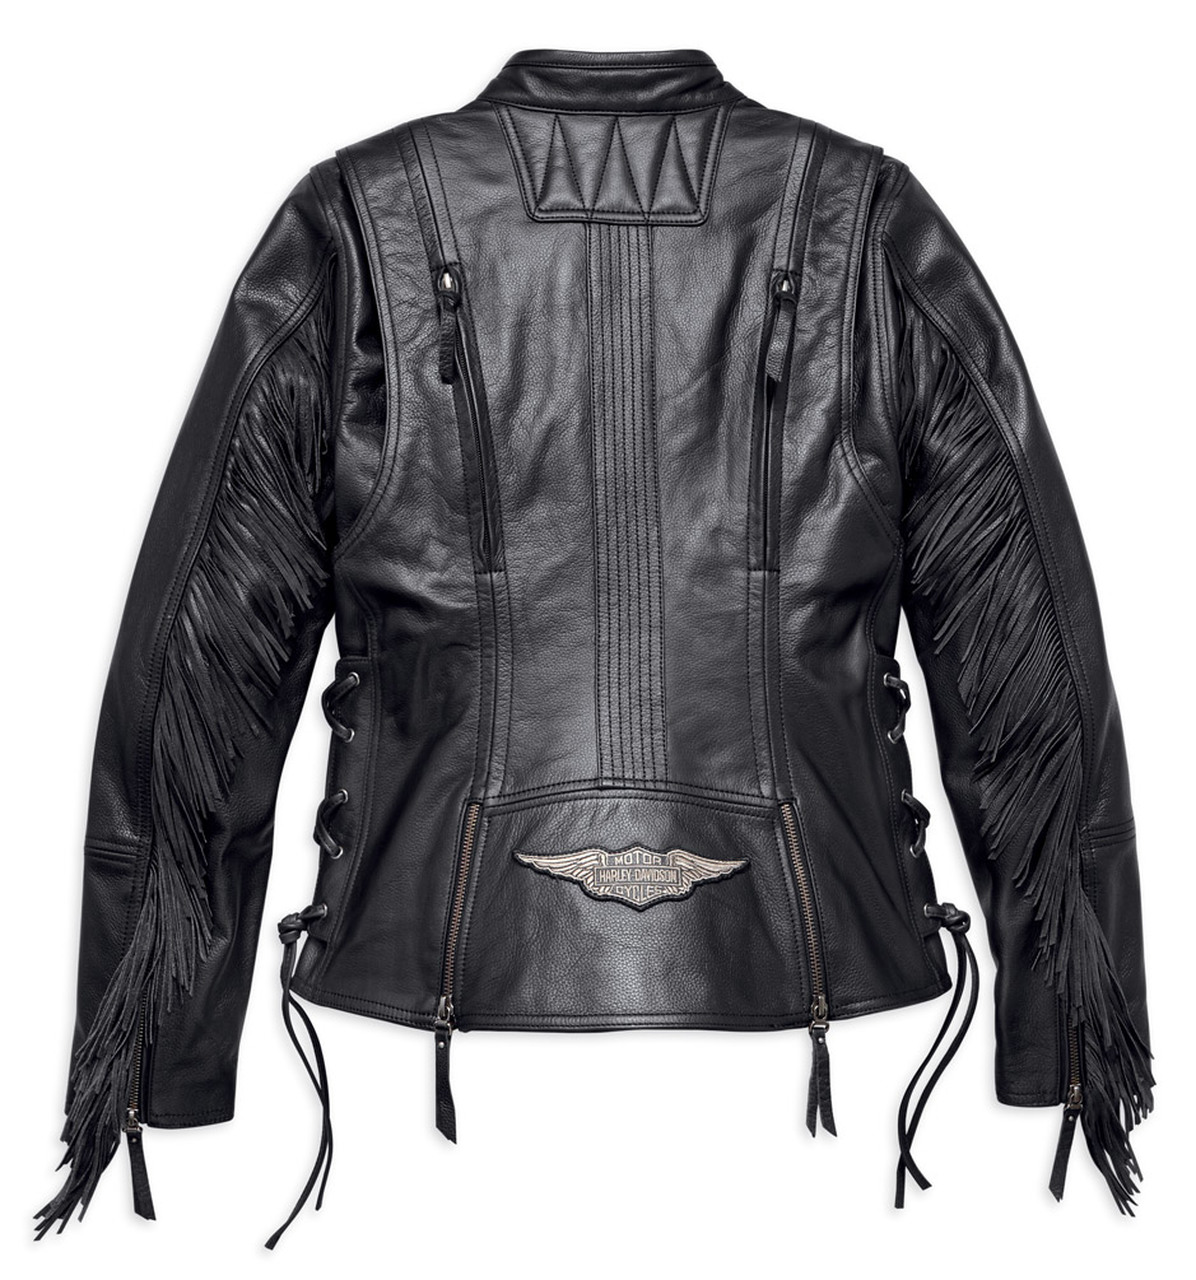 Harley Davidson Boone fringed leather jacket womenâs, black â Harley-Davidson Rimouski